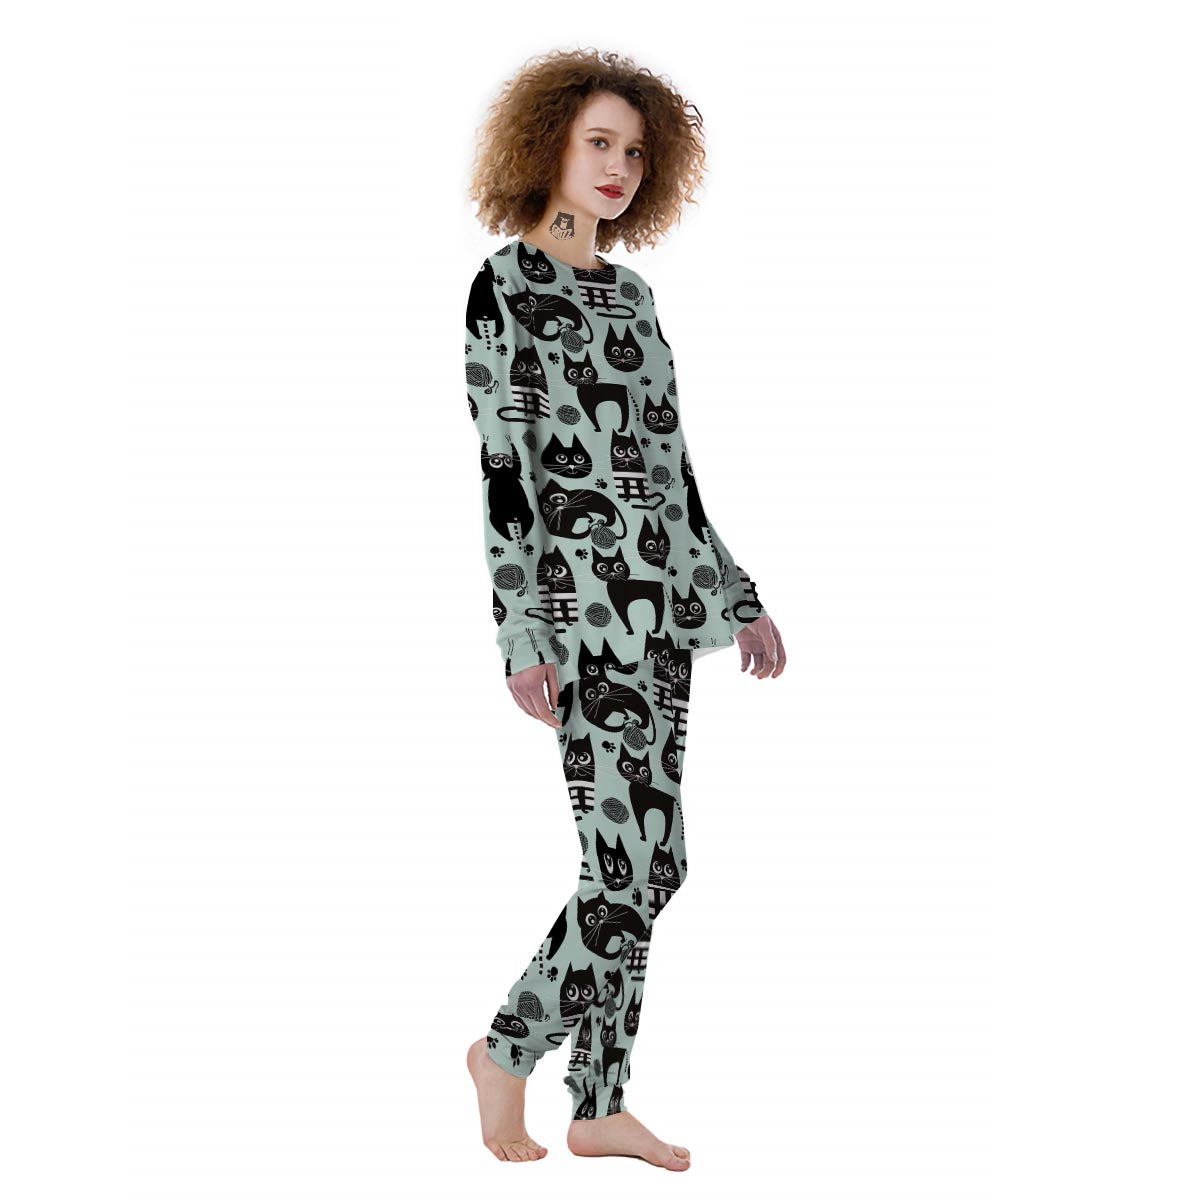 https://grizzshopping.com/cdn/shop/products/Cute-Black-Cat-Print-Womens-Pajamas-2.jpg?v=1648762205